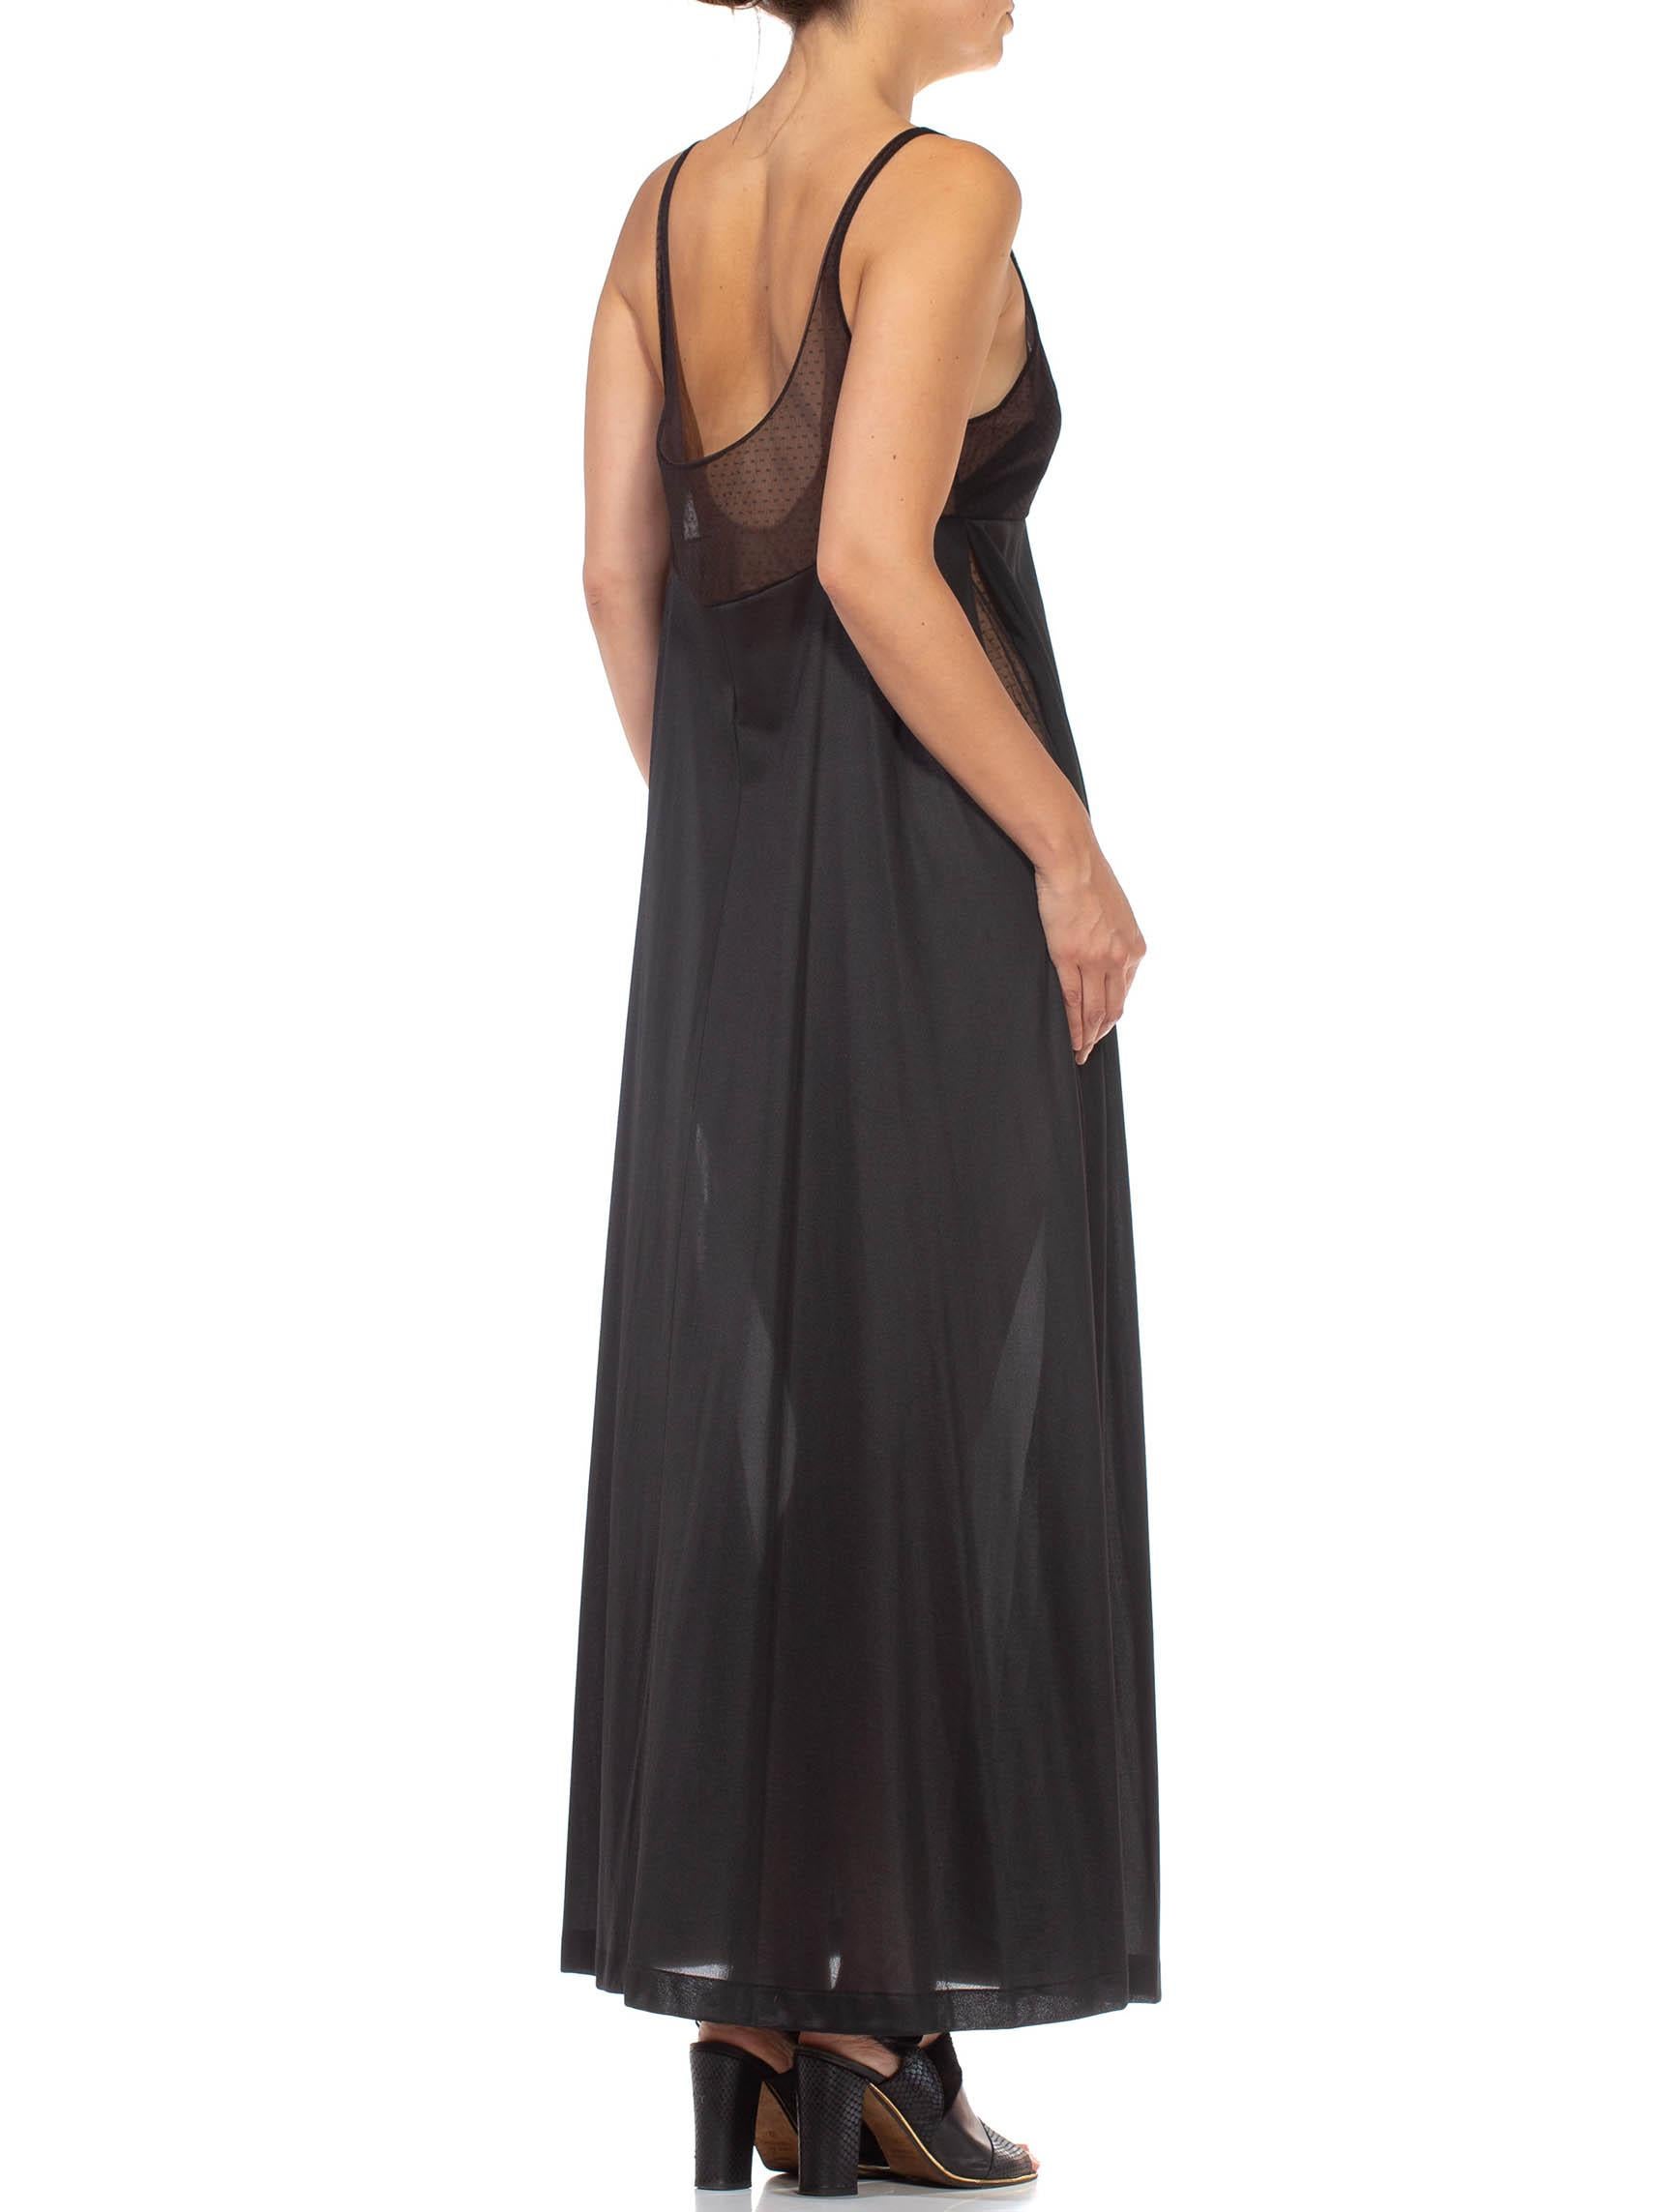 1970S Black Sheer Mesh Bodice Nylon Negligee Slip Dress For Sale 5